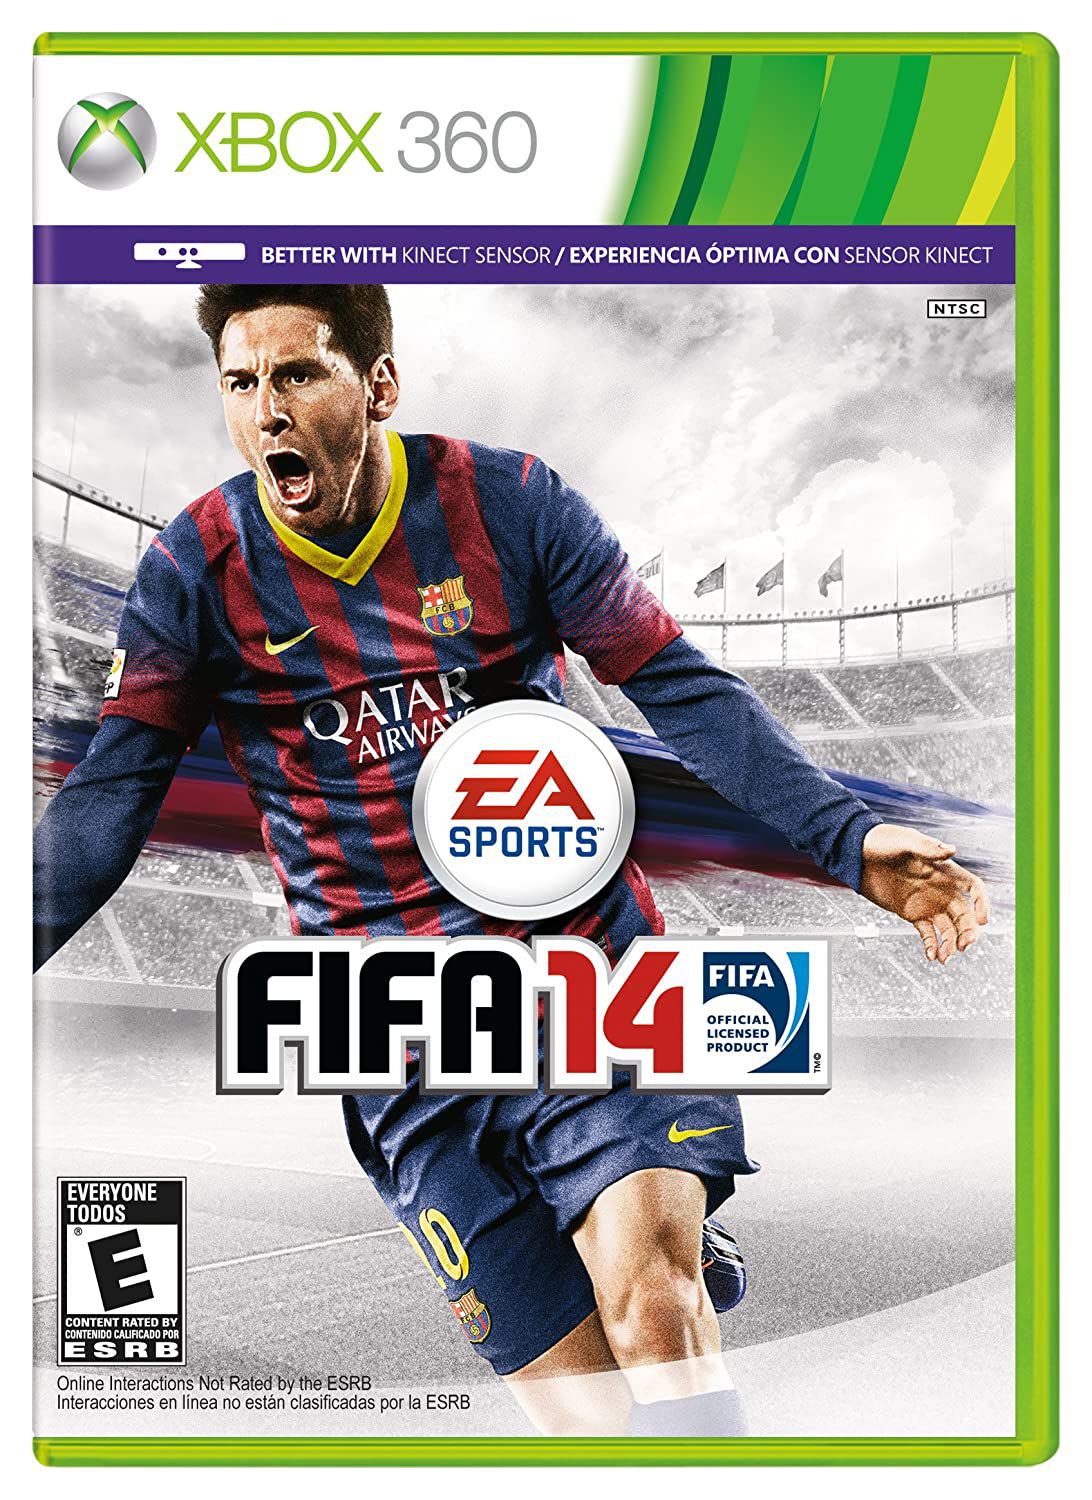 Jogos de Futebol para Xbox 360